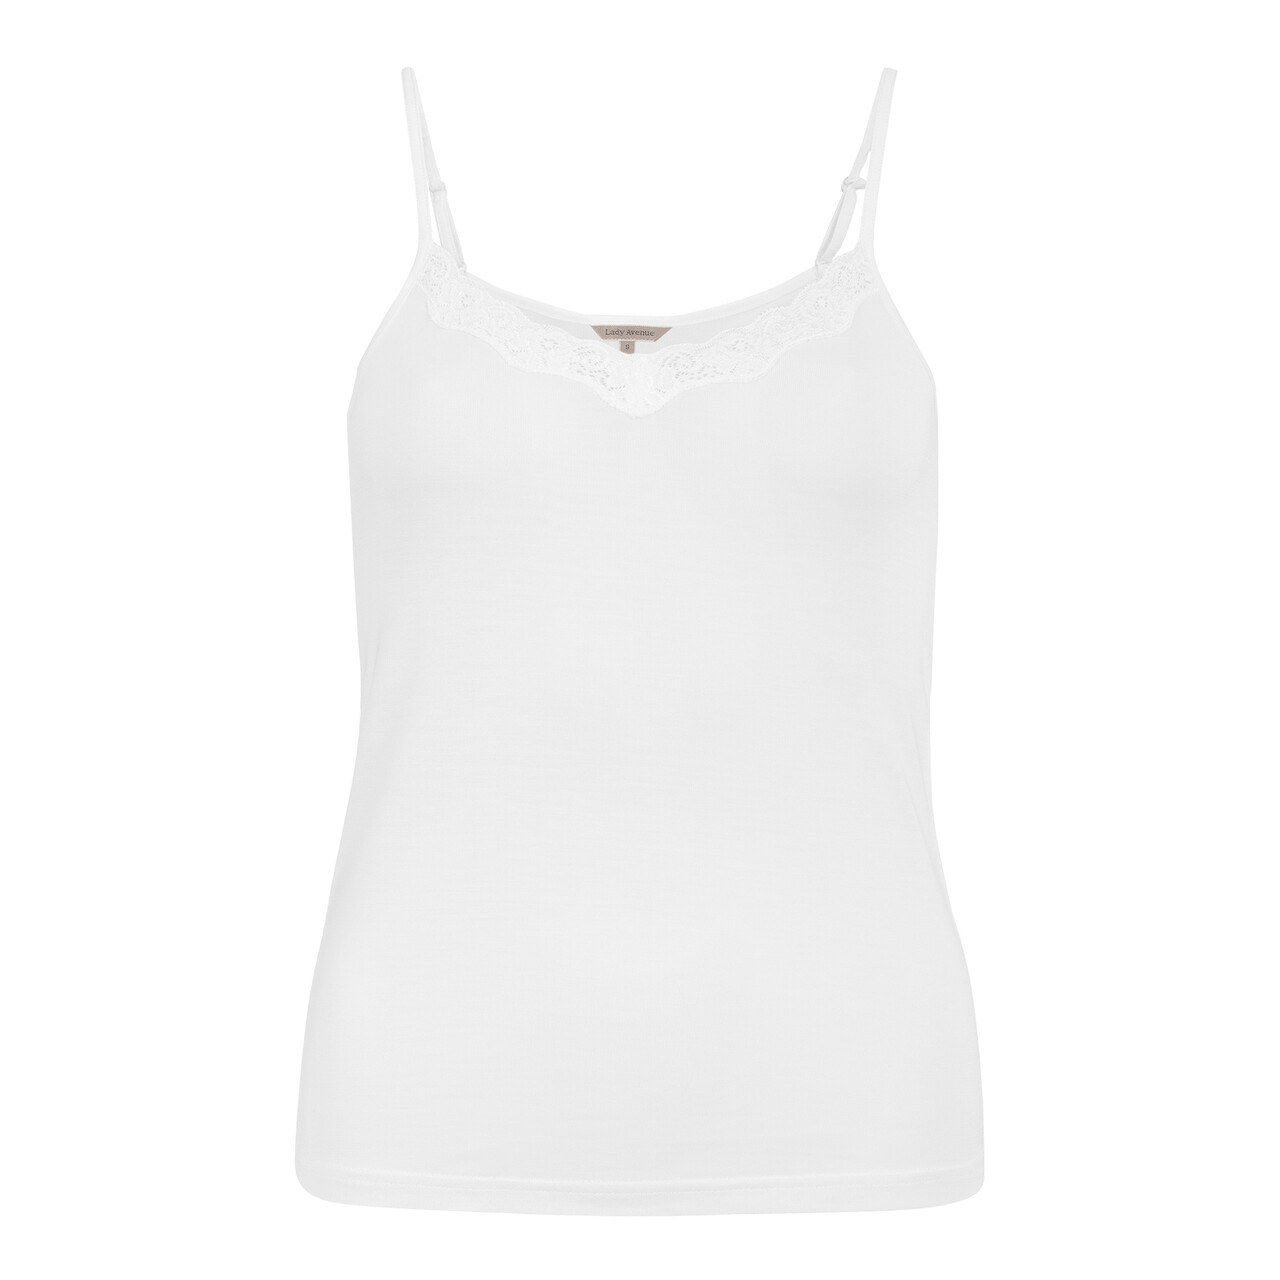 Billede af Lady Avenue Silk Jersey Camisole Top, Farve: Hvid, Størrelse: XS, Dame